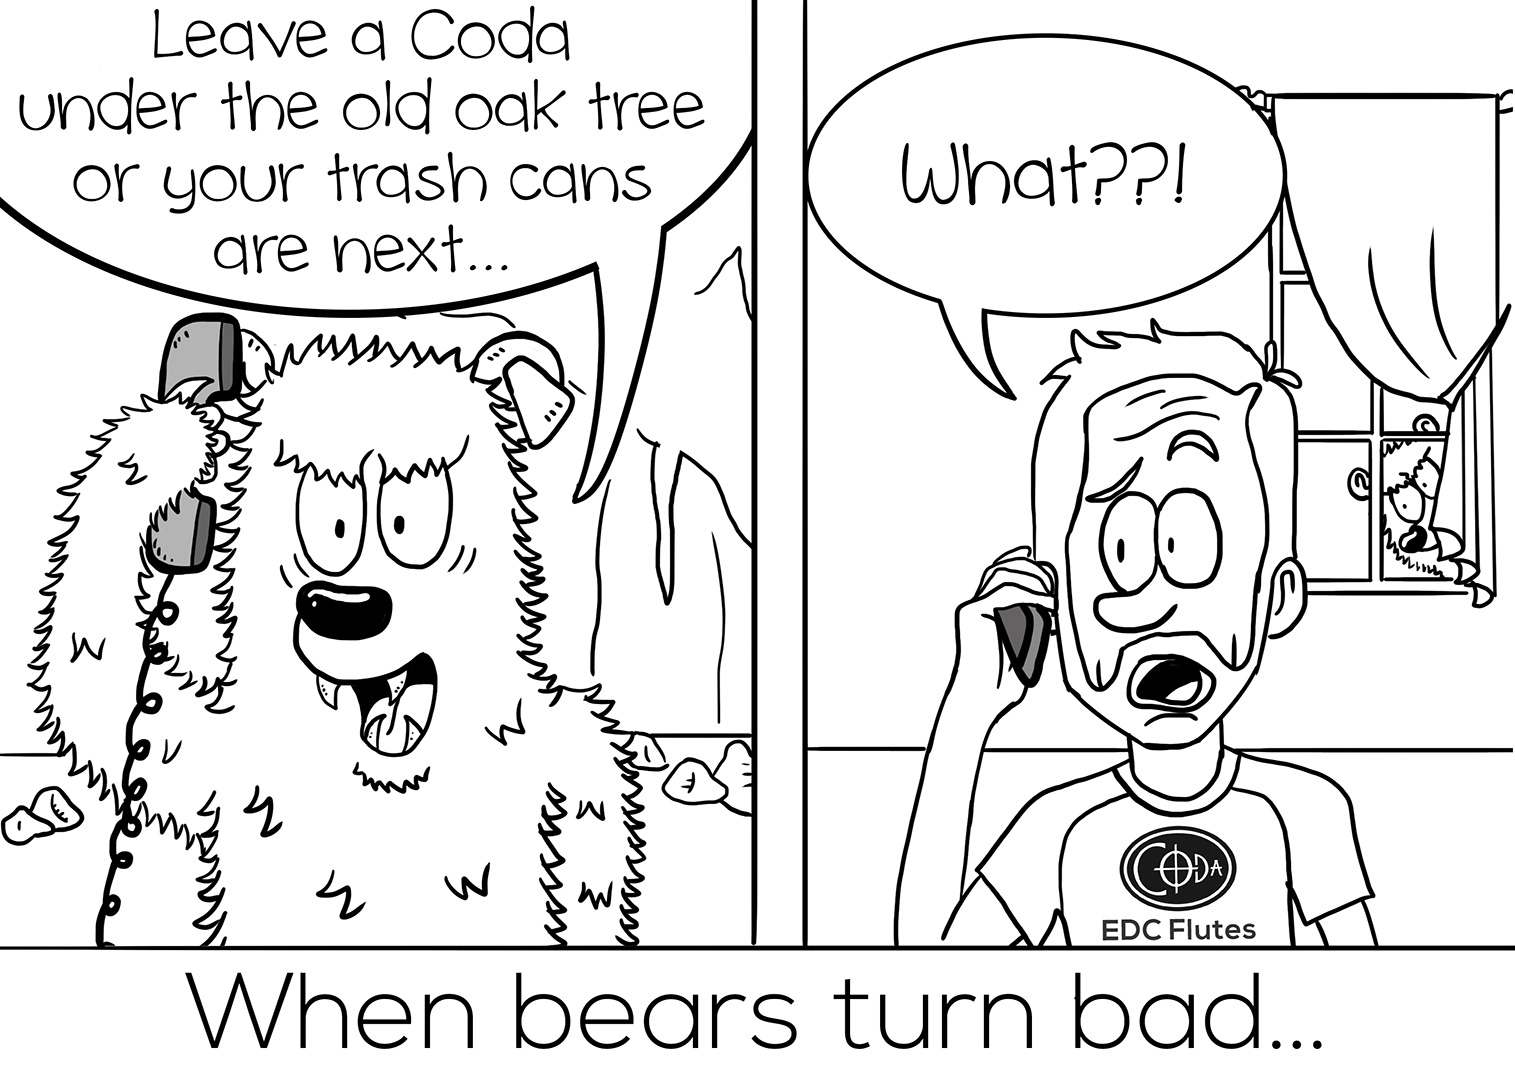 Coda - Breaking Bear